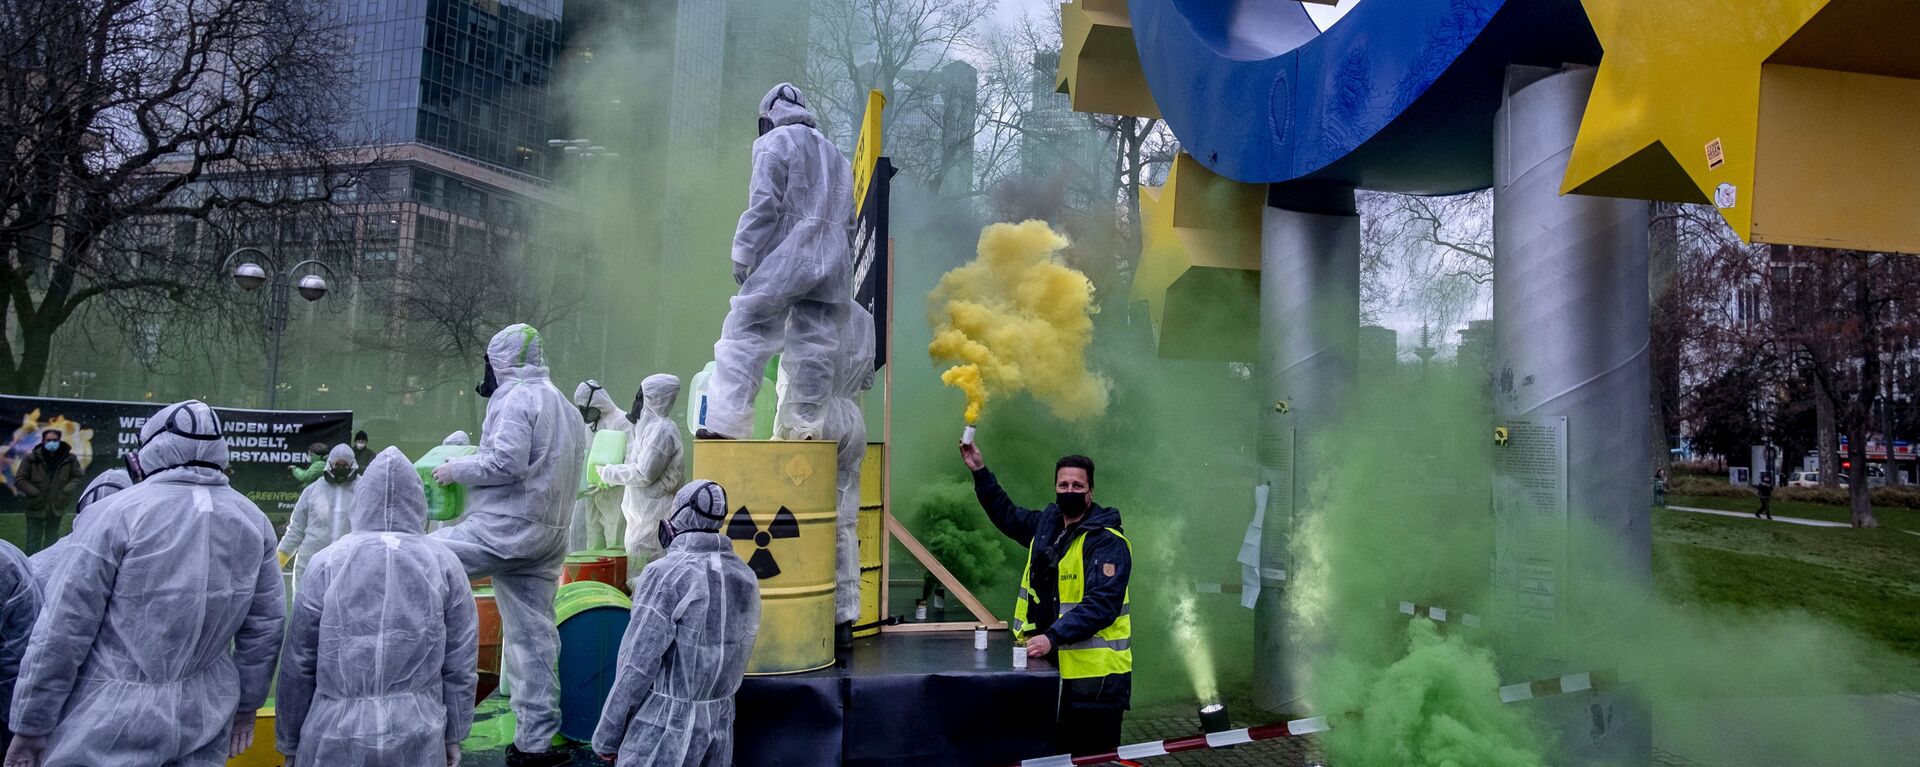 احتجاج نشطاء البيئة في غرينبيس و كوالا كولكتيف ضد غسل الاتحاد الأوروبي للطاقة النووية تحت تمثال اليورو في فرانكفورت، ألمانيا، 11 يناير 2022. - سبوتنيك عربي, 1920, 07.09.2022